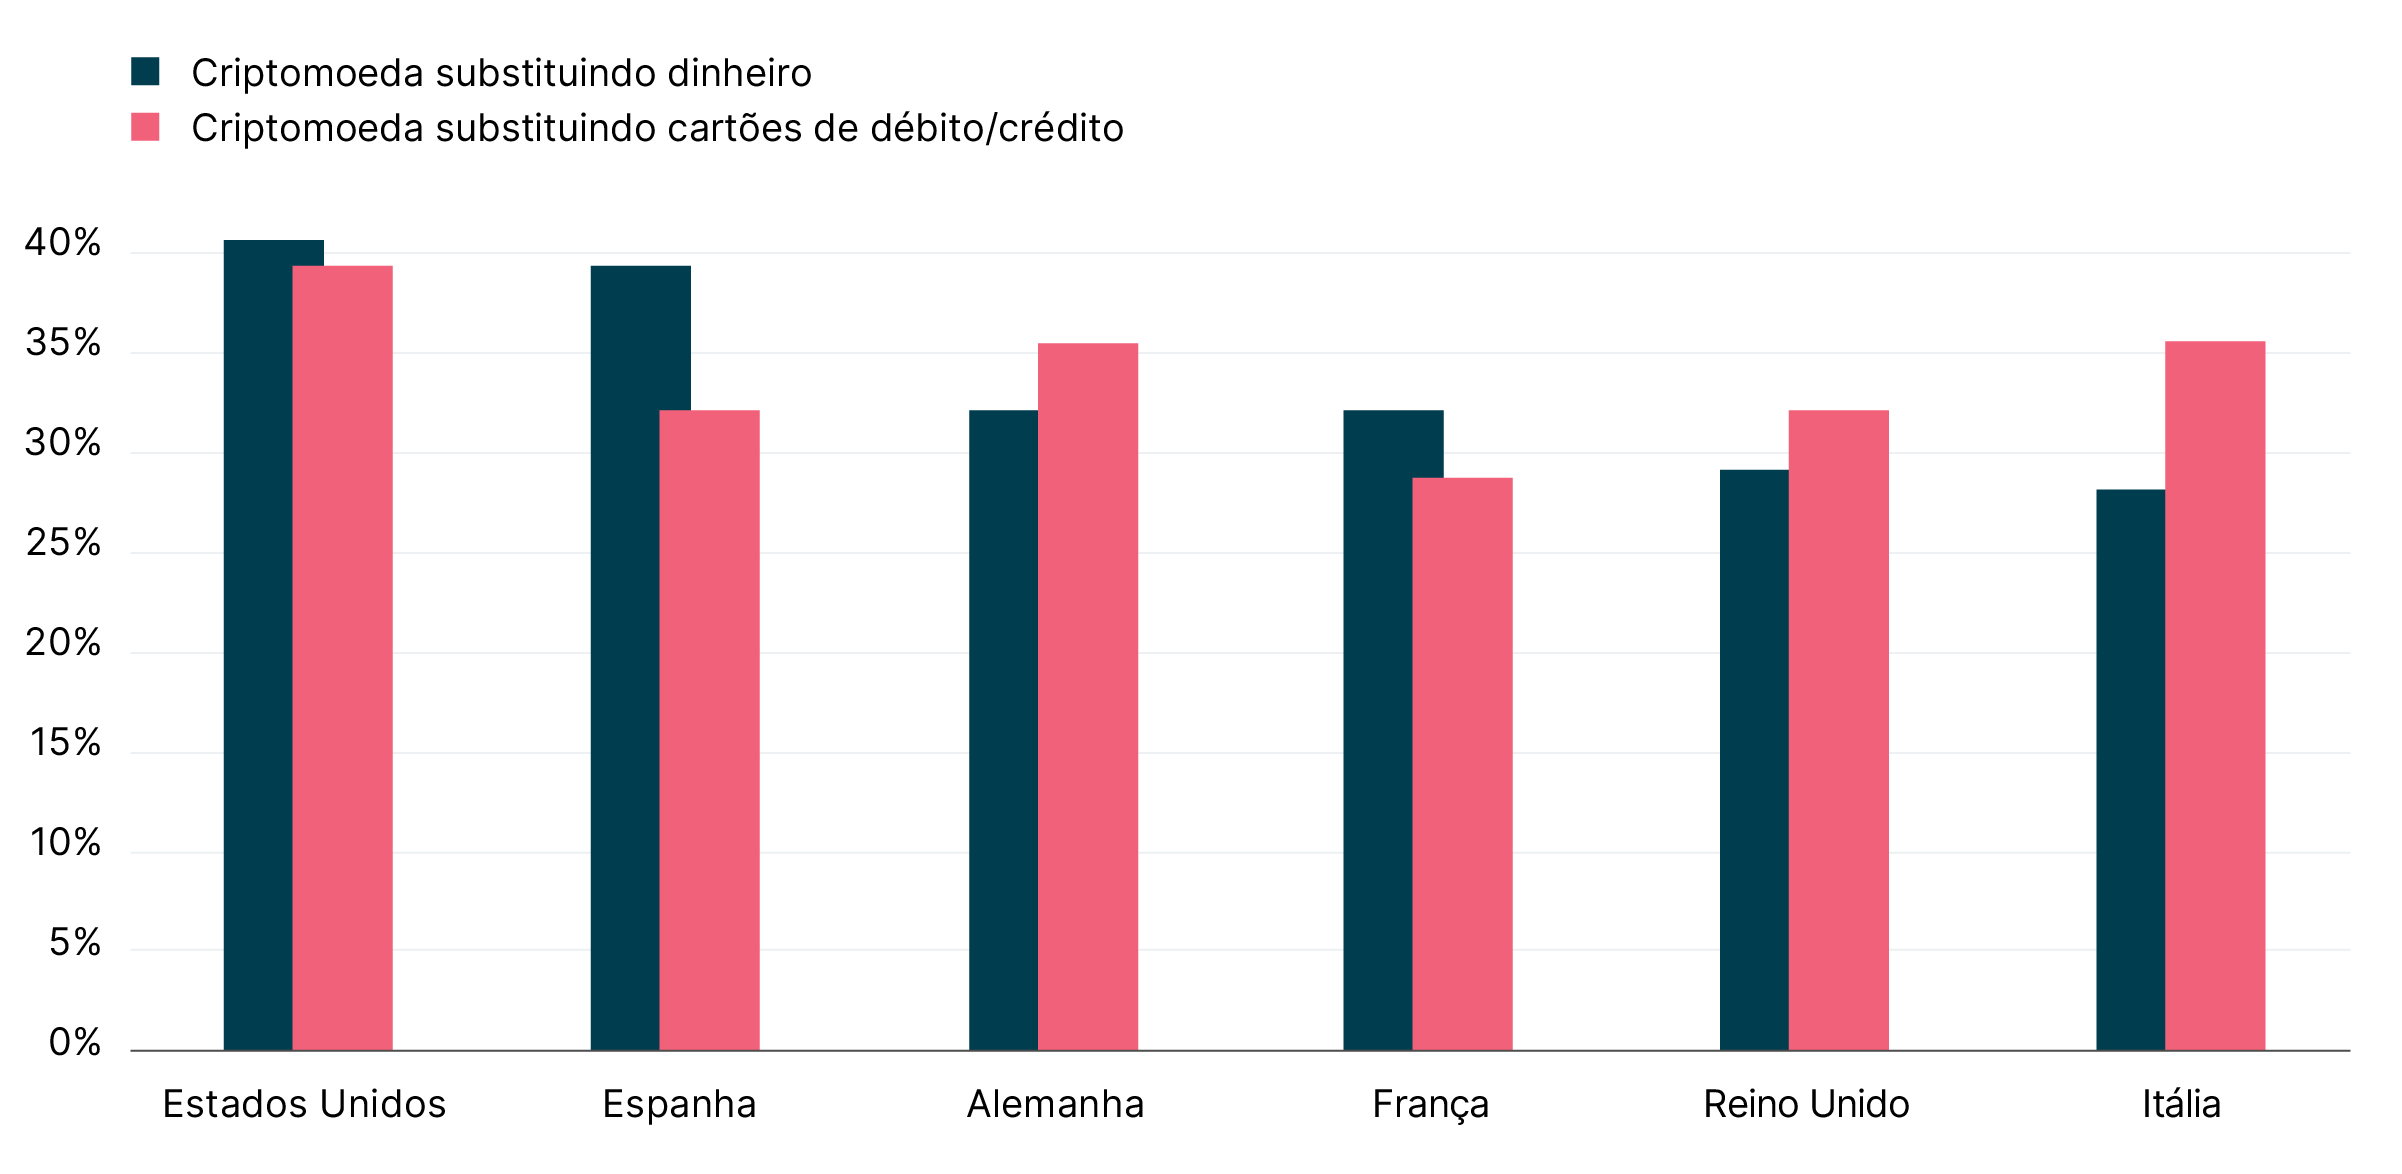 Gráfico de barras exibindo a porcentagem de millennials que consideram as criptomoedas como substitutas do dinheiro e dos cartões de crédito e débito.